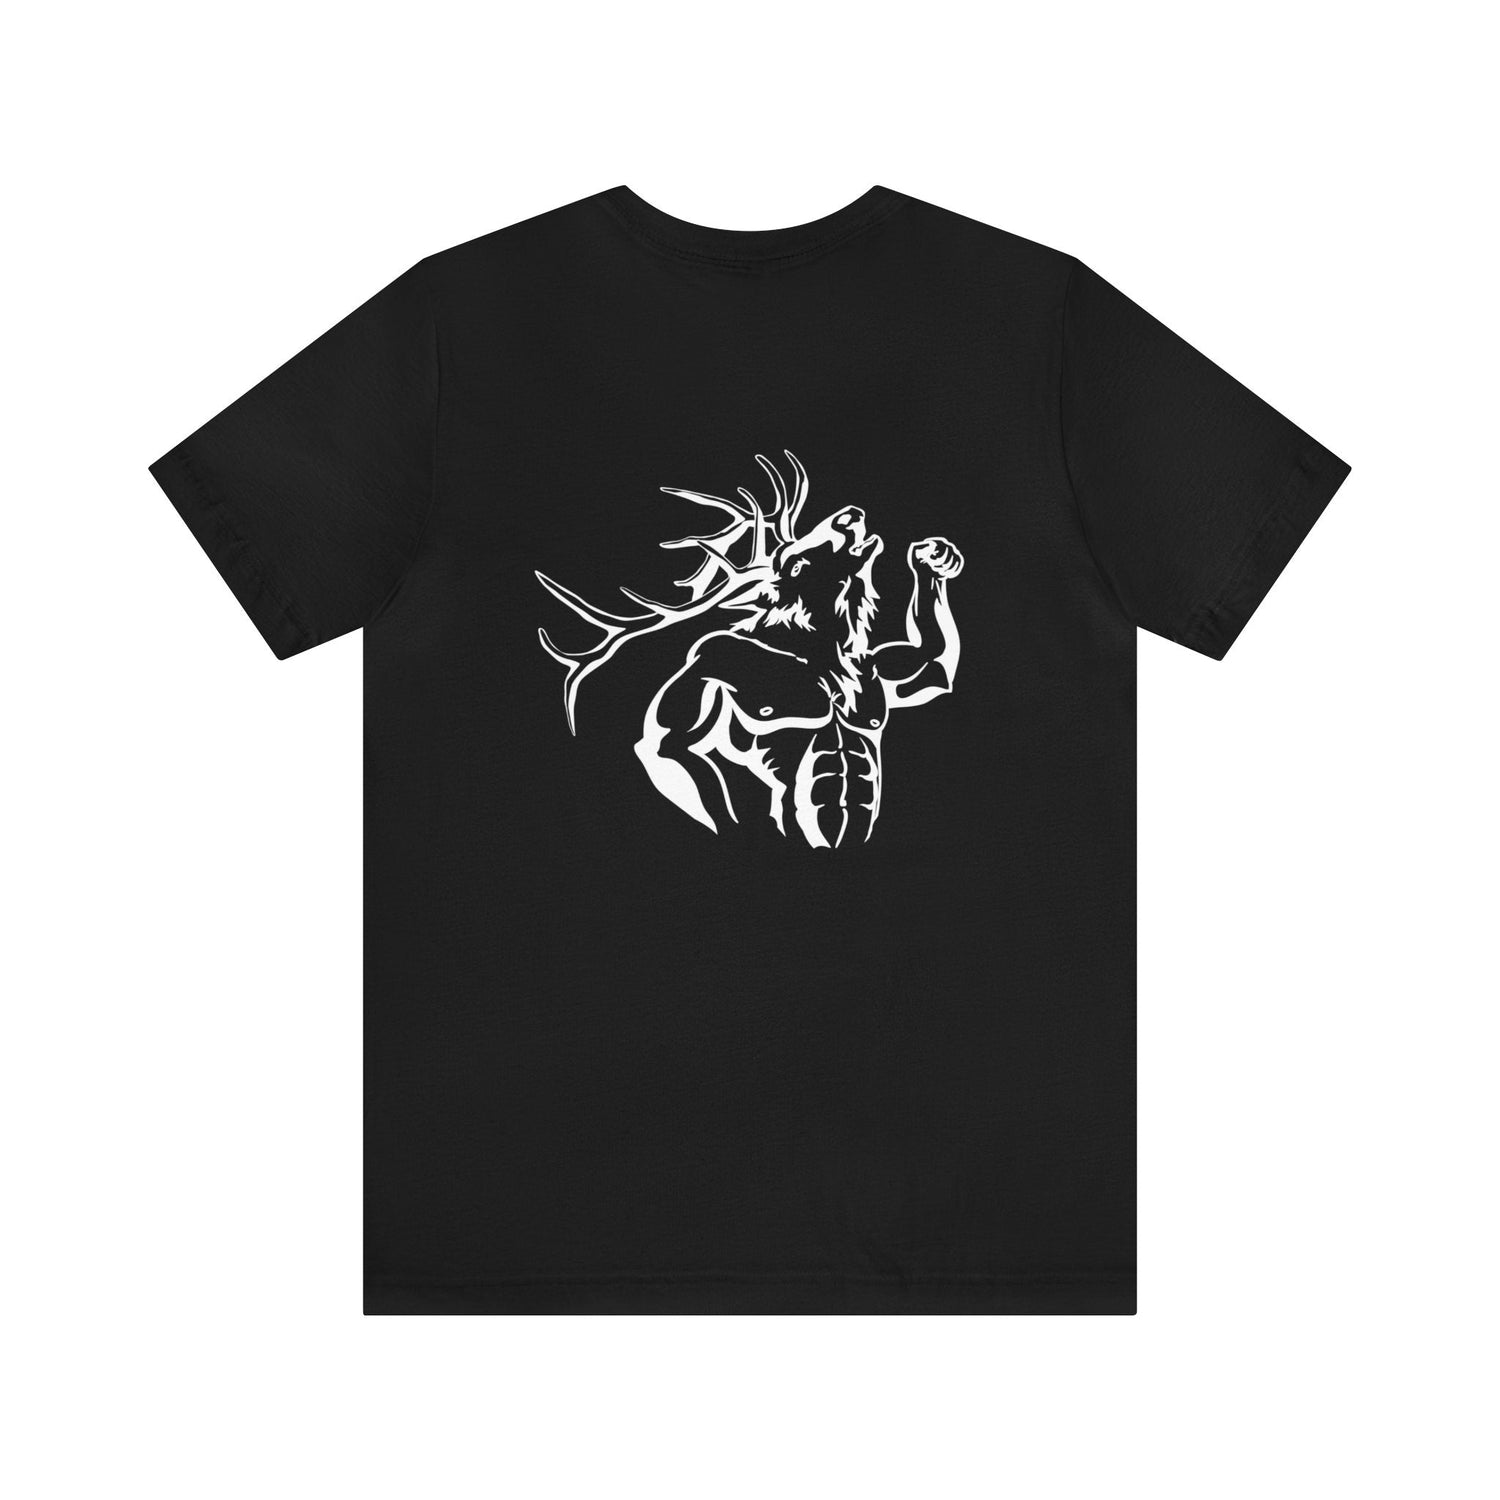 Western elk hunting t-shirt, color black, back design placement